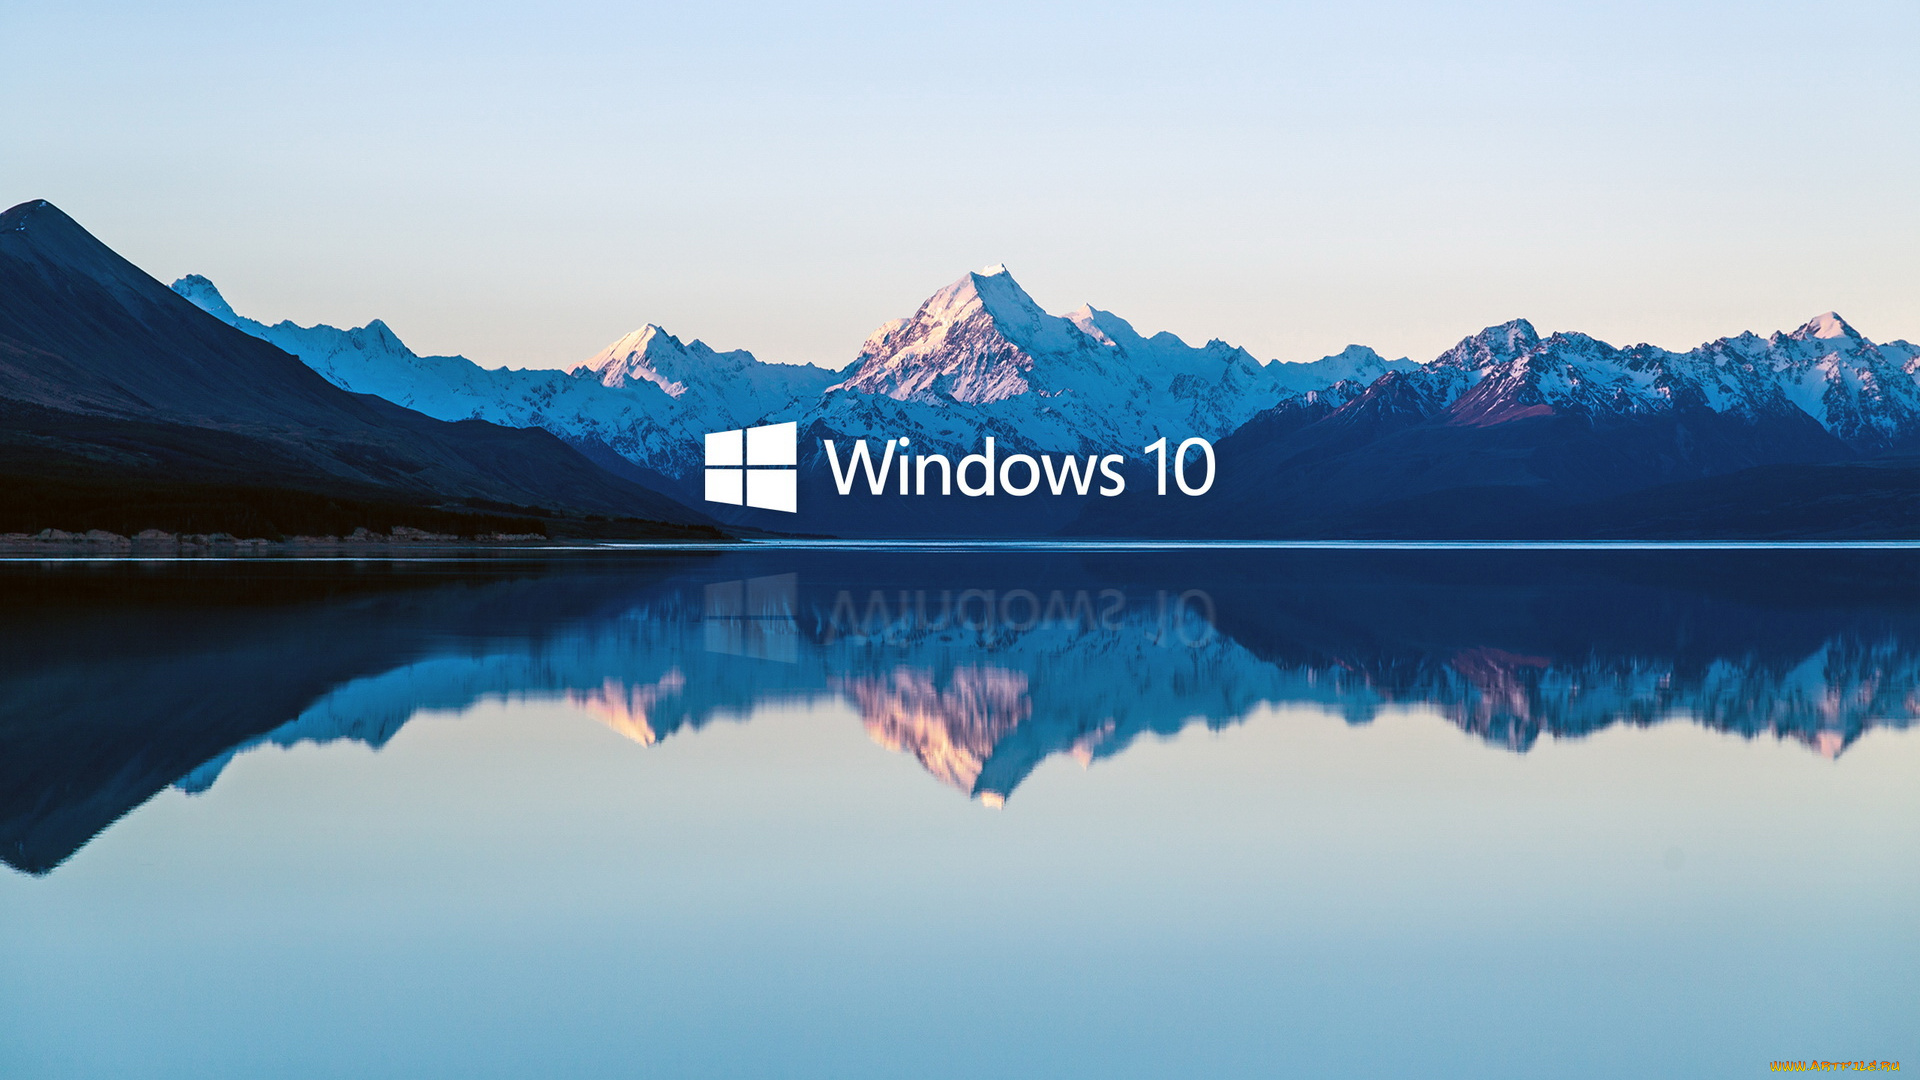 компьютеры, windows, 10, логотип, фон, горы